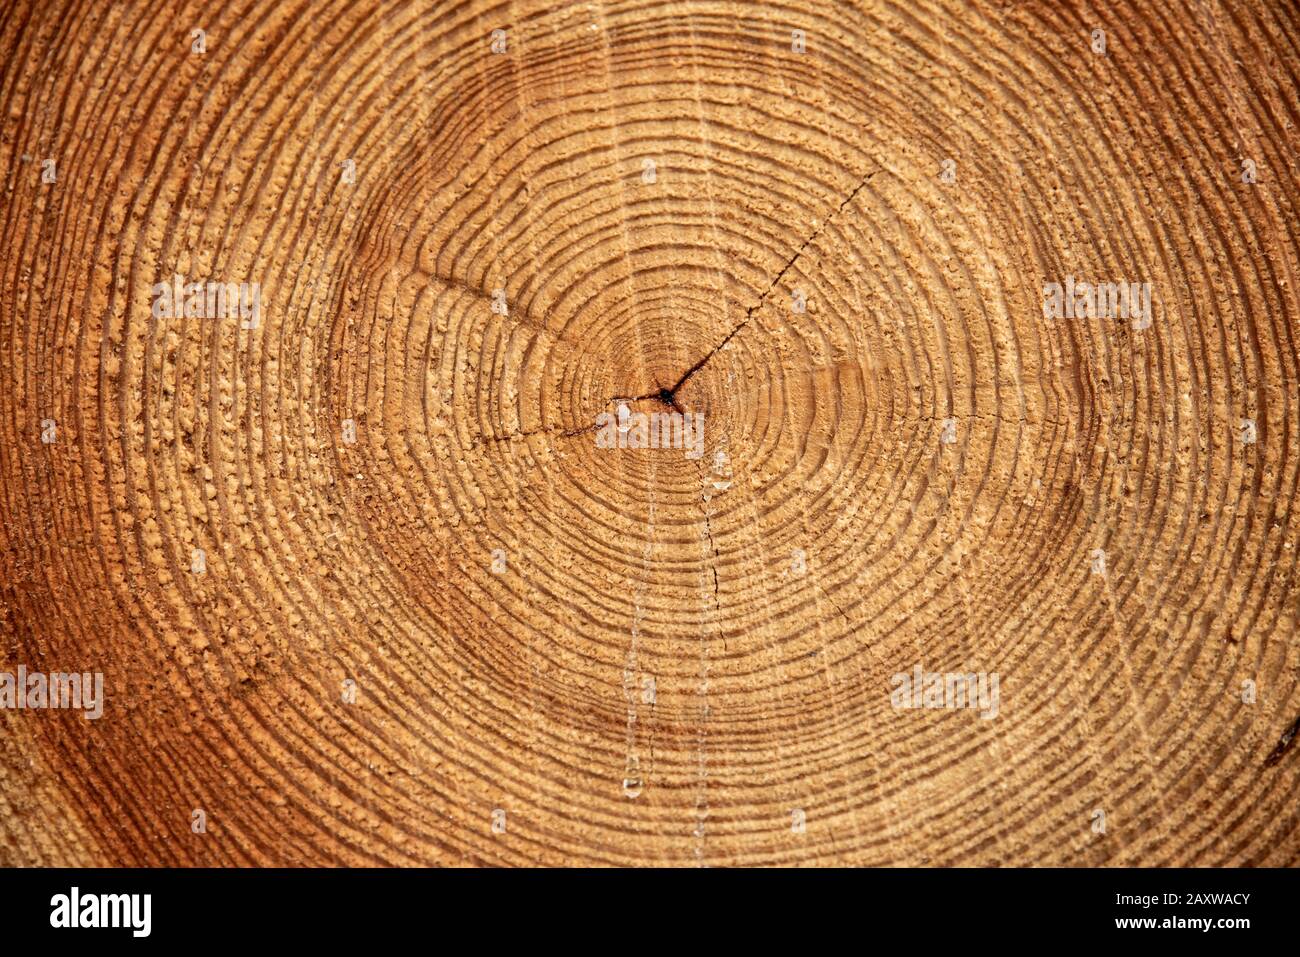 Un arbre scié. La texture du bois. Gros plan d'une section transversale de bois d'oeuvre. Texture d'arrière-plan Banque D'Images